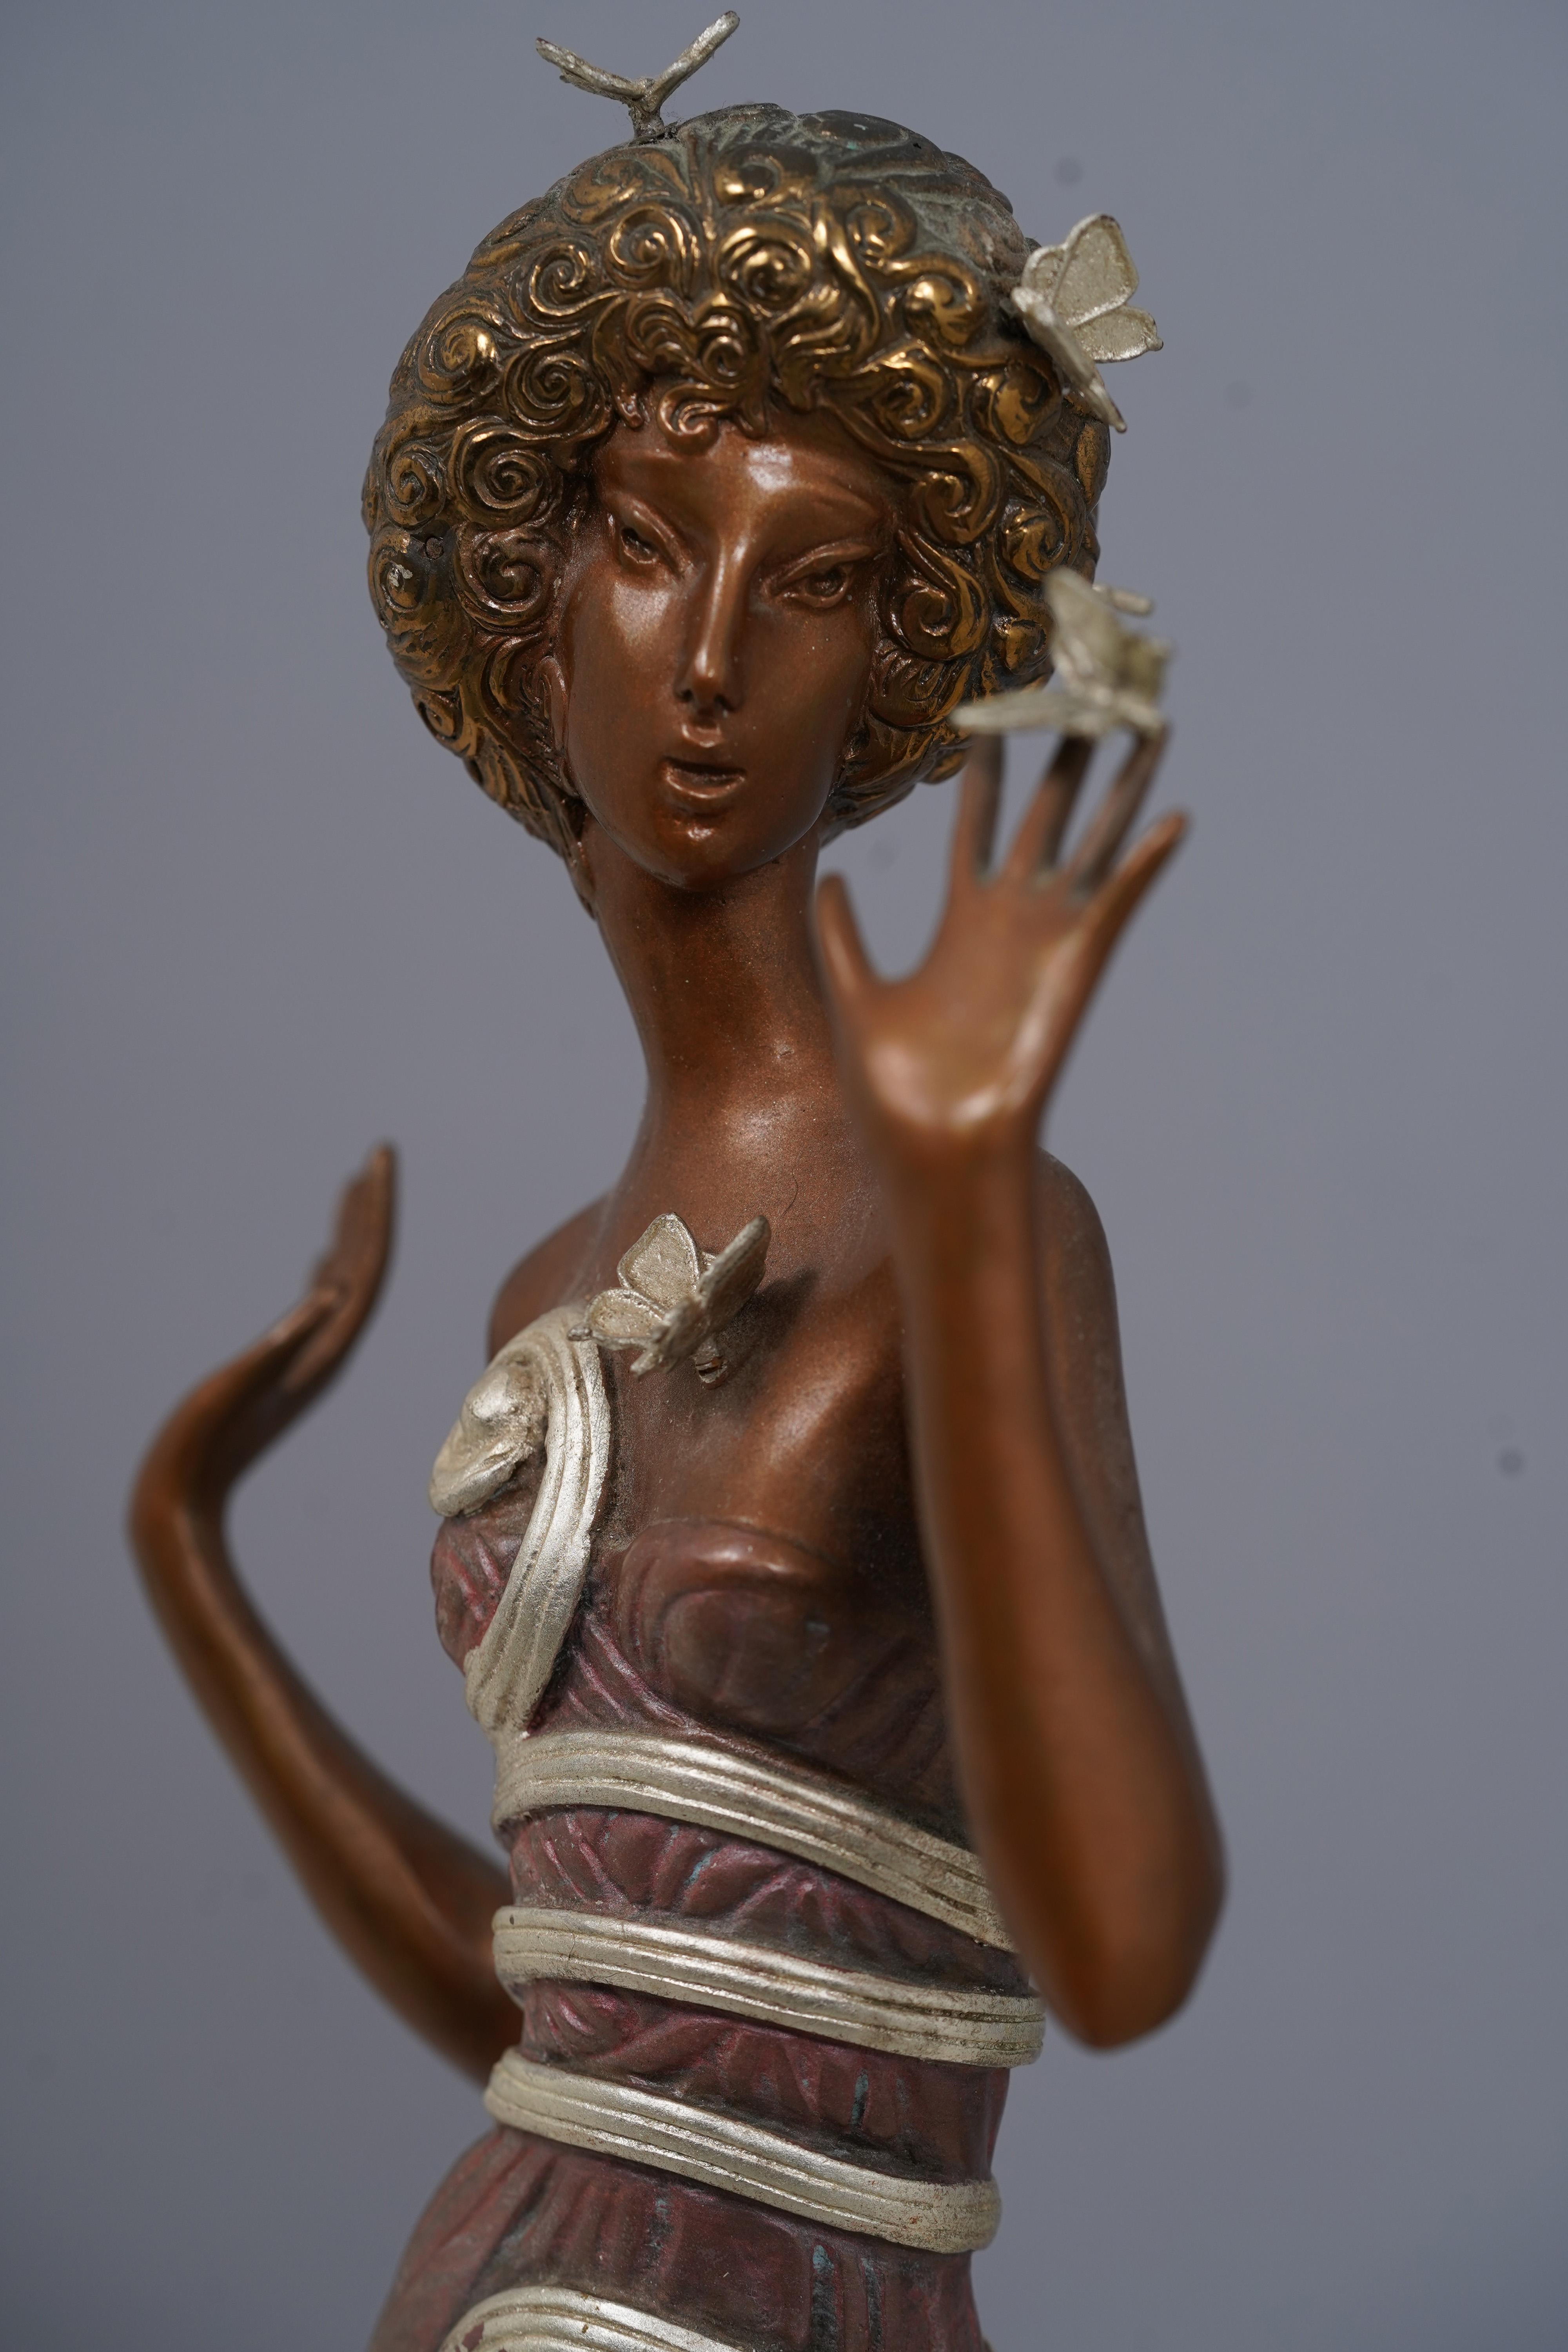 Vintage Art Deco Signed Original Bronze Woman Portrait Limited Edition Sculpture For Sale 4